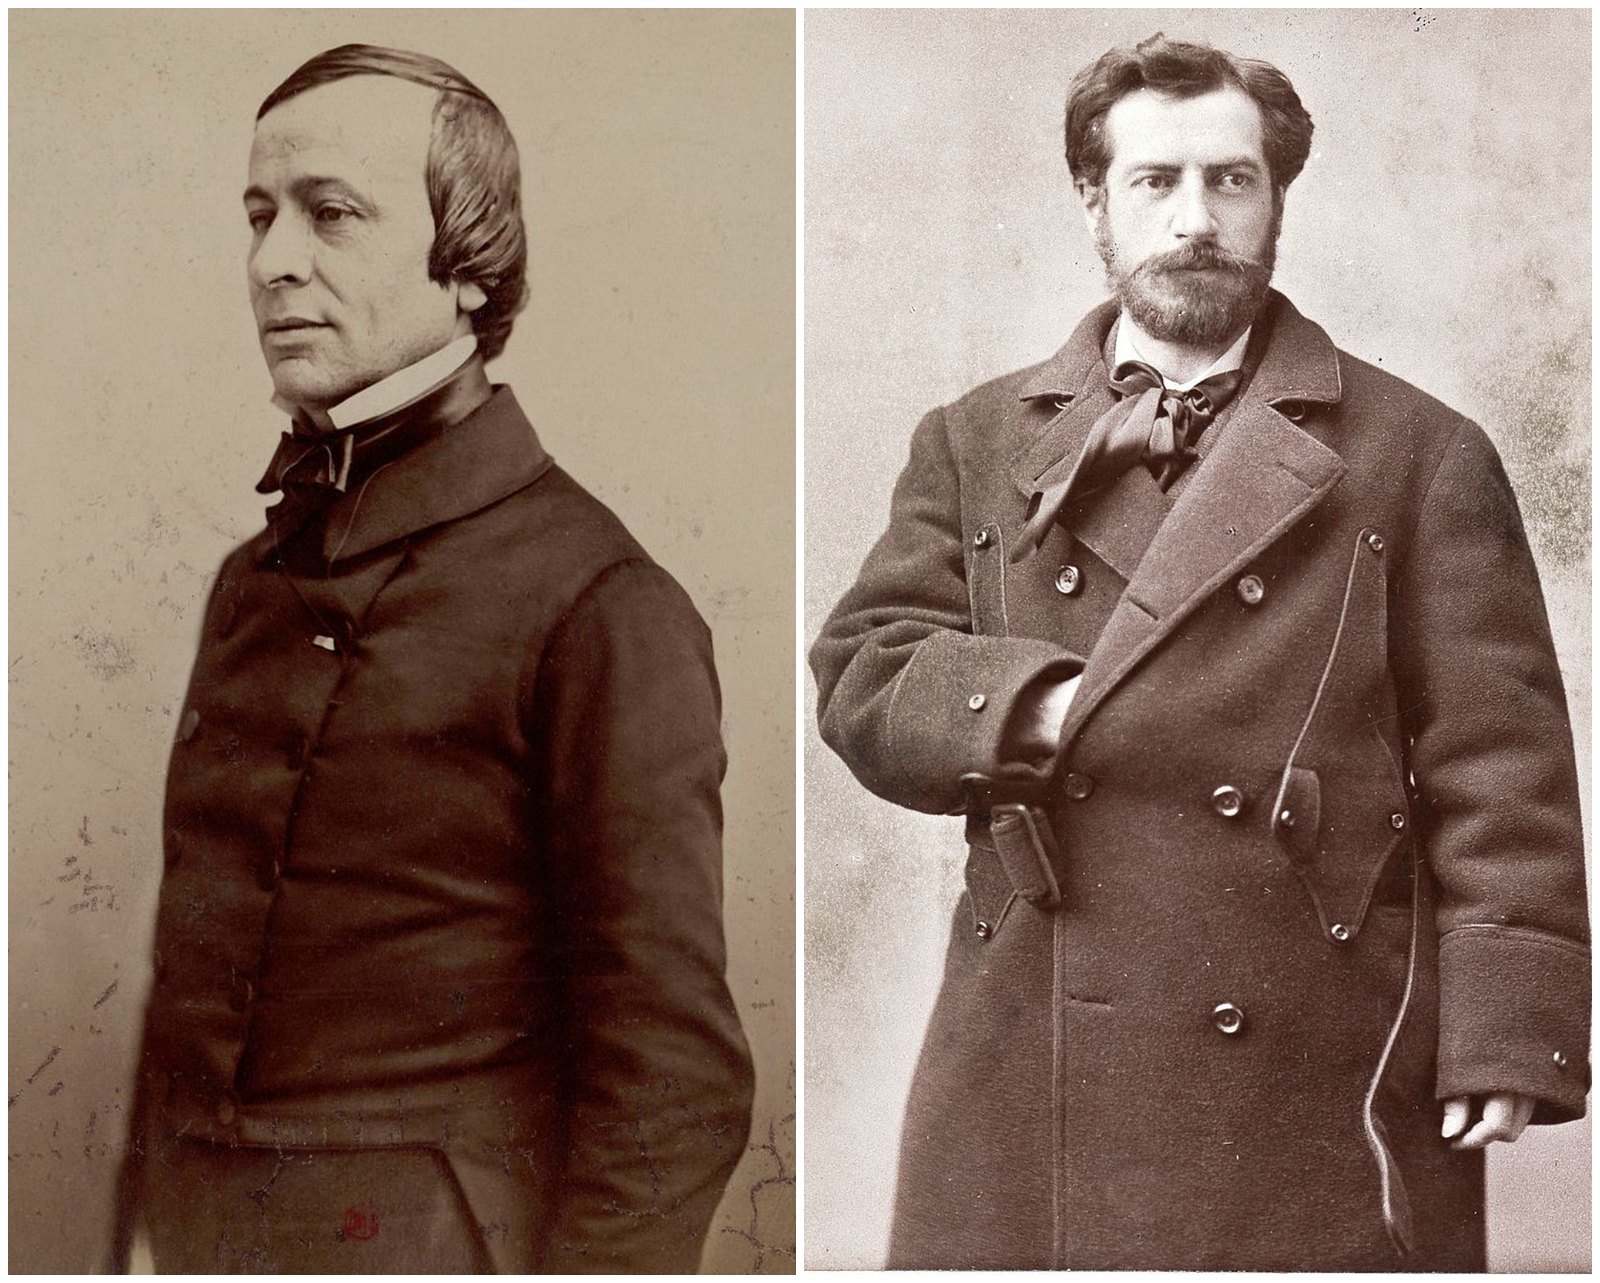 Édouard René de Laboulaye (left) and Frédéric Auguste Bartholdi